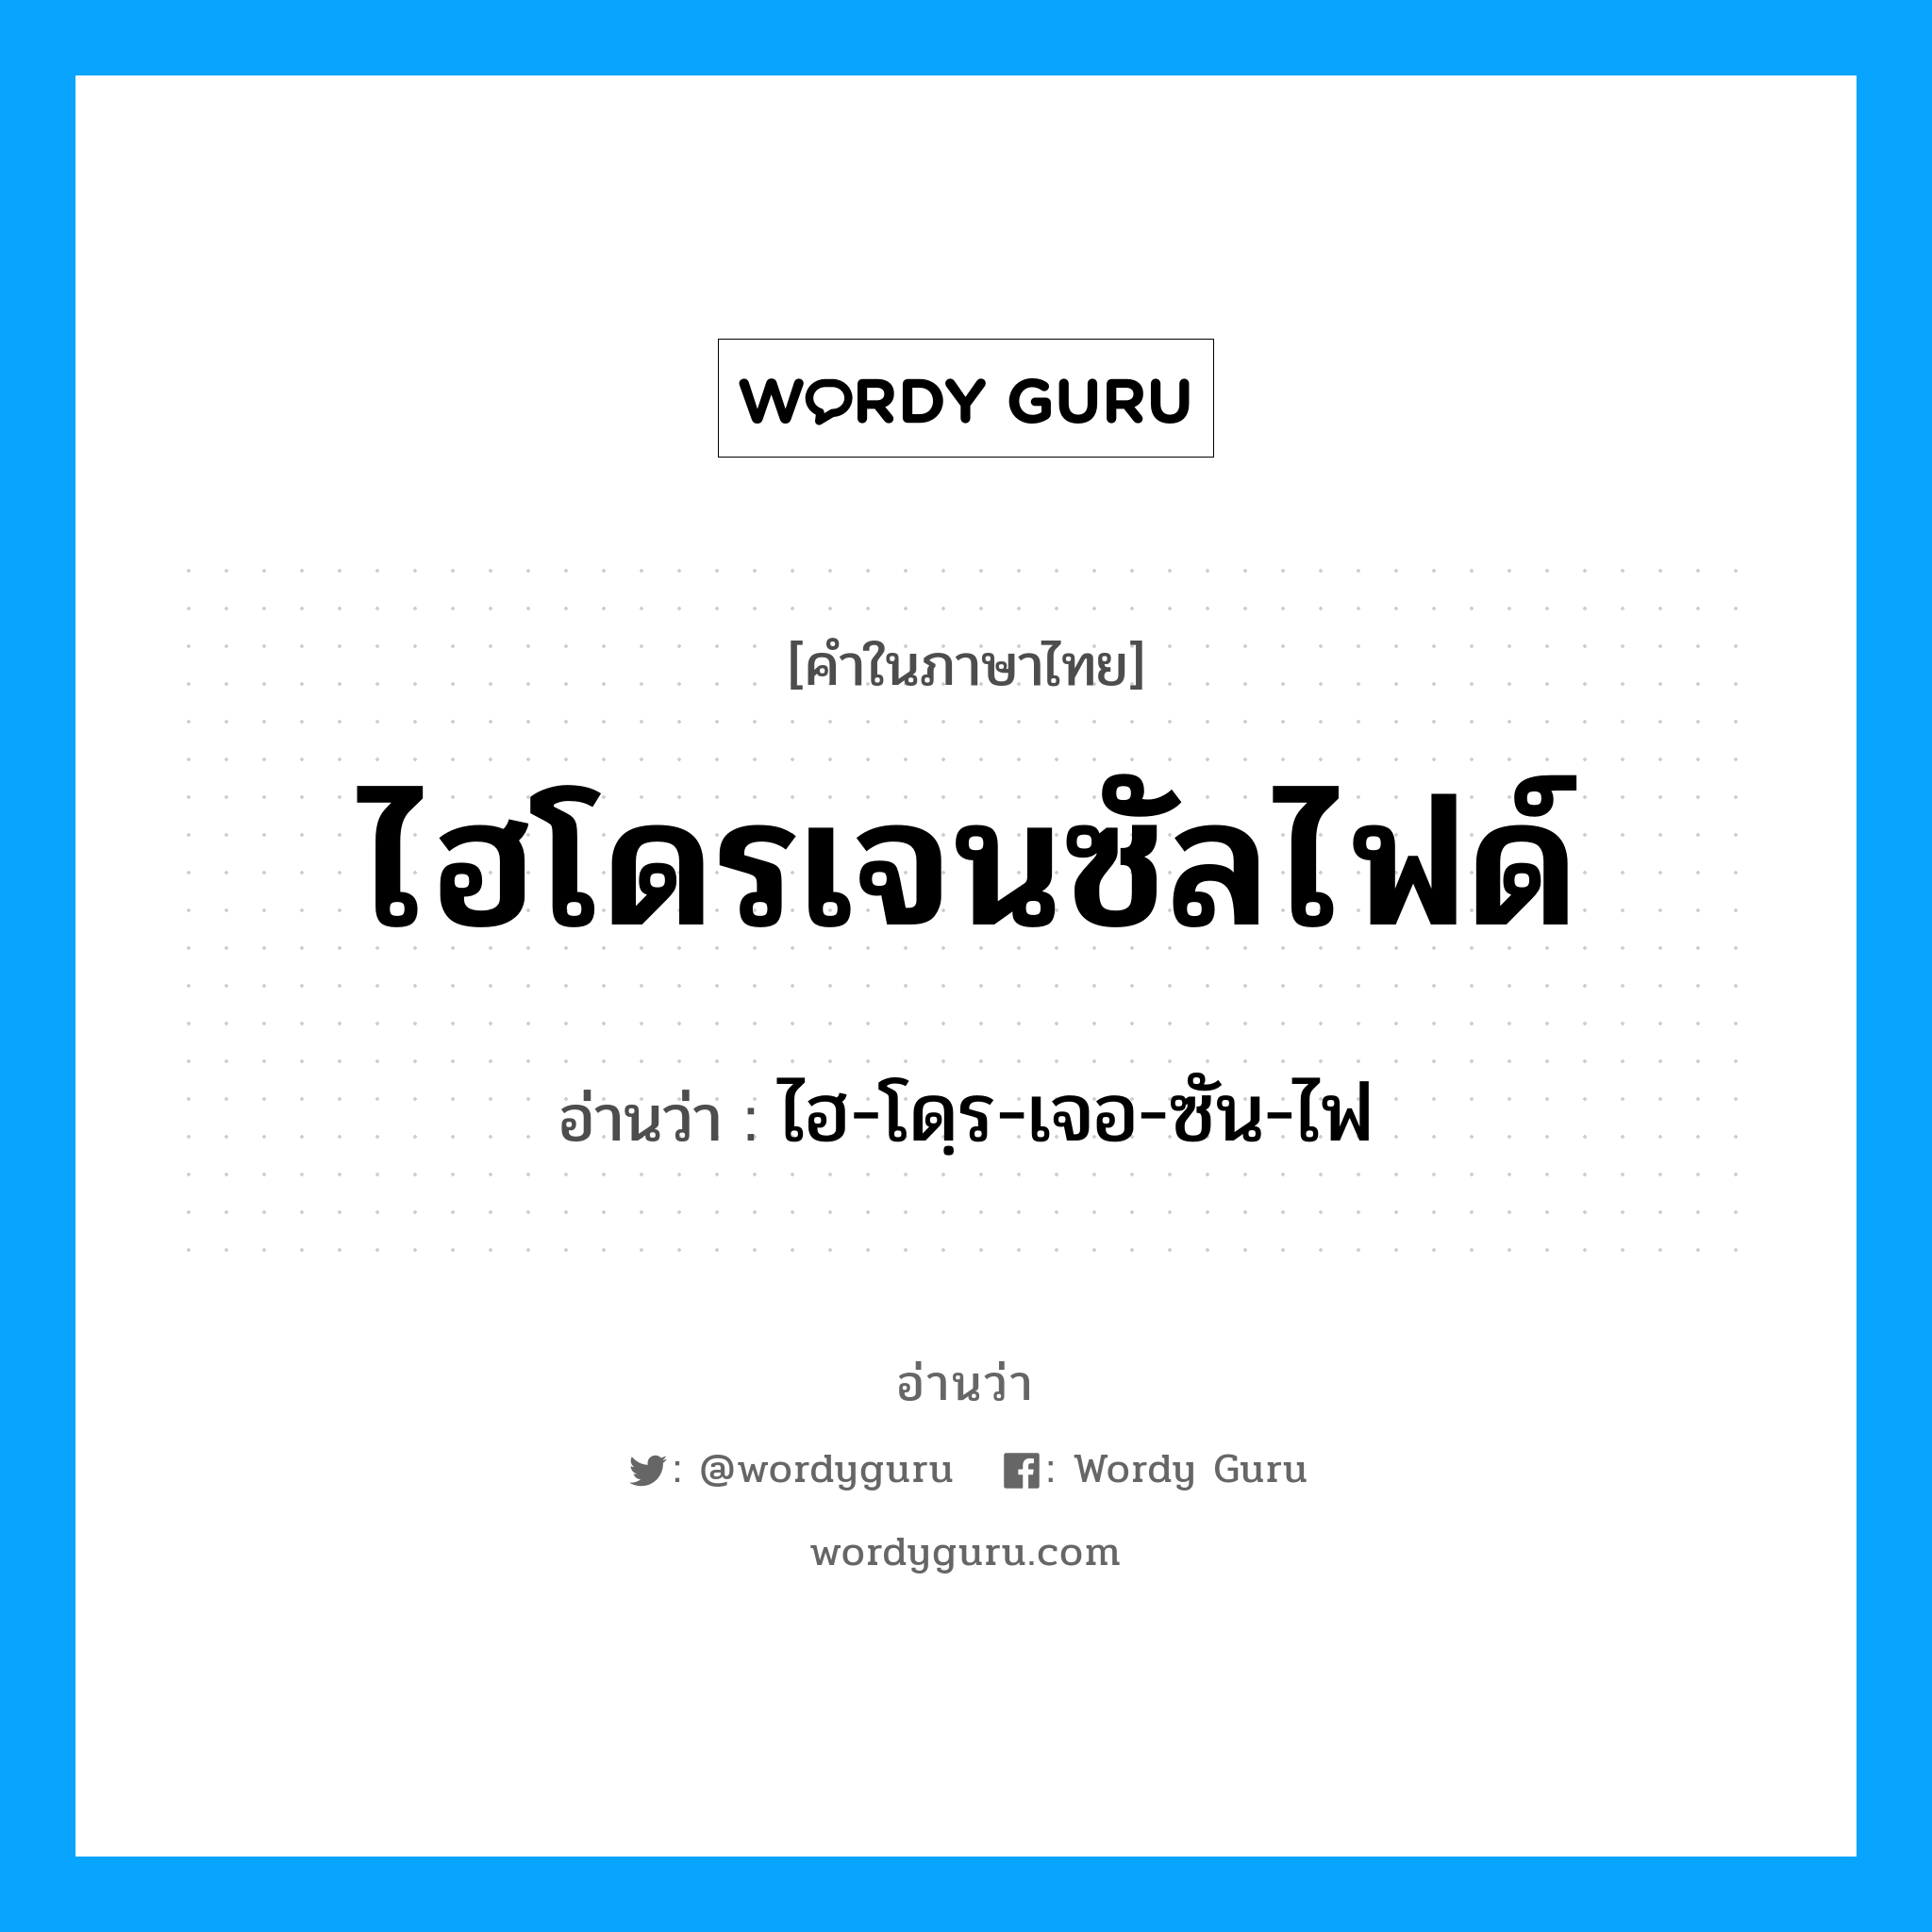 ไฮ-โดฺร-เจอ-ซัน-ไฟ เป็นคำอ่านของคำไหน?, คำในภาษาไทย ไฮ-โดฺร-เจอ-ซัน-ไฟ อ่านว่า ไฮโดรเจนซัลไฟด์